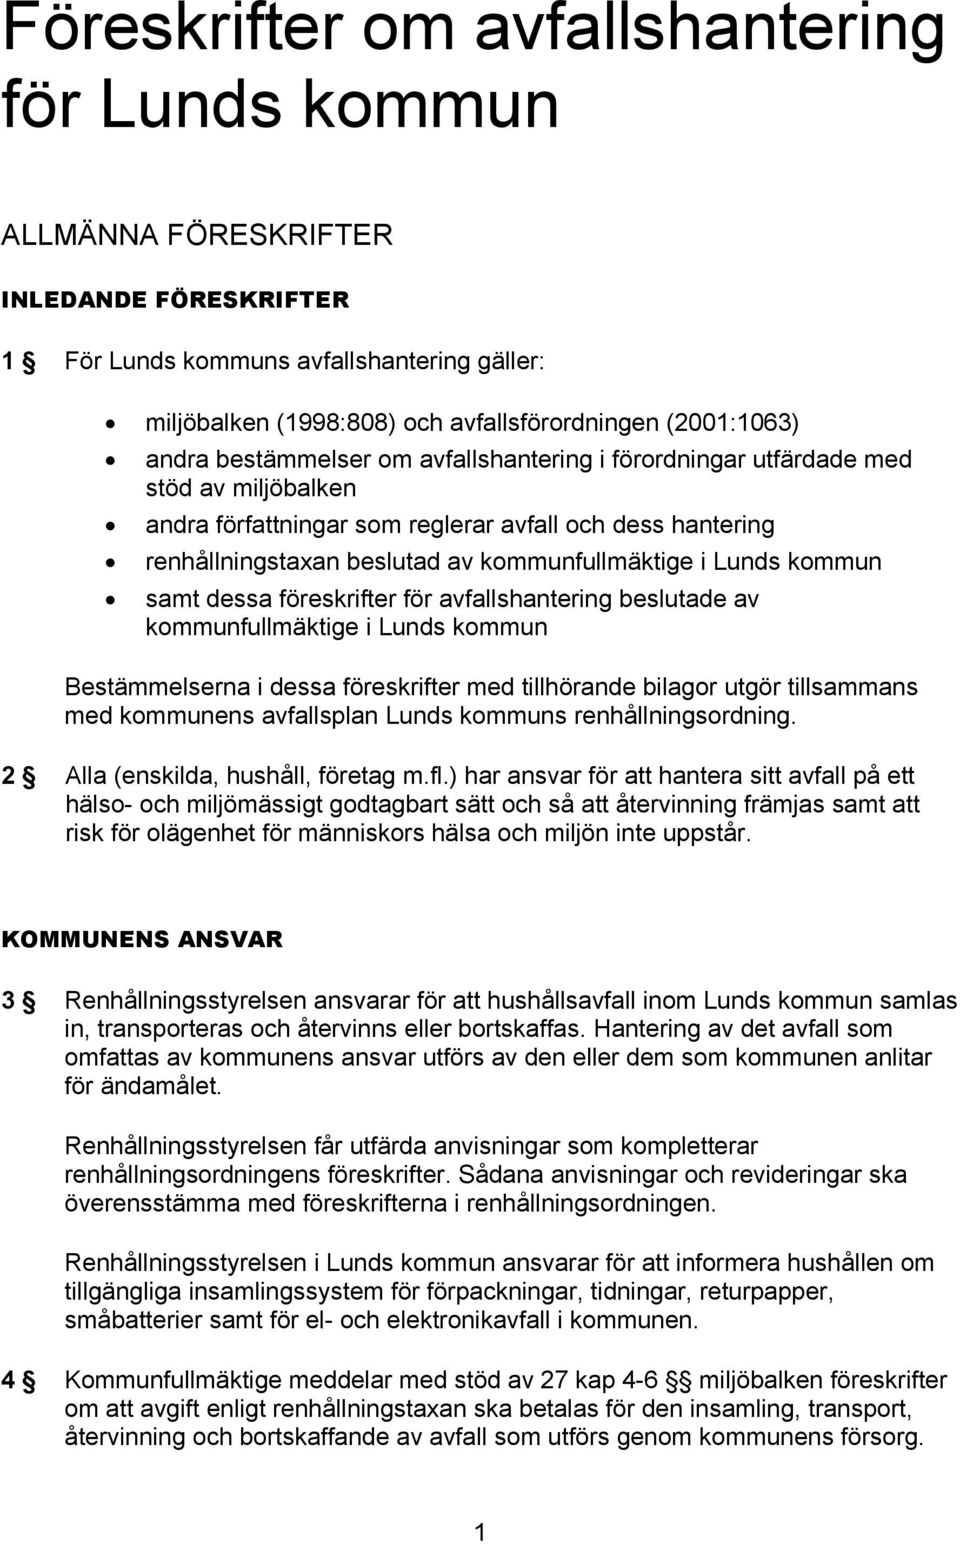 Lunds kommun samt dessa föreskrifter för avfallshantering beslutade av kommunfullmäktige i Lunds kommun Bestämmelserna i dessa föreskrifter med tillhörande bilagor utgör tillsammans med kommunens